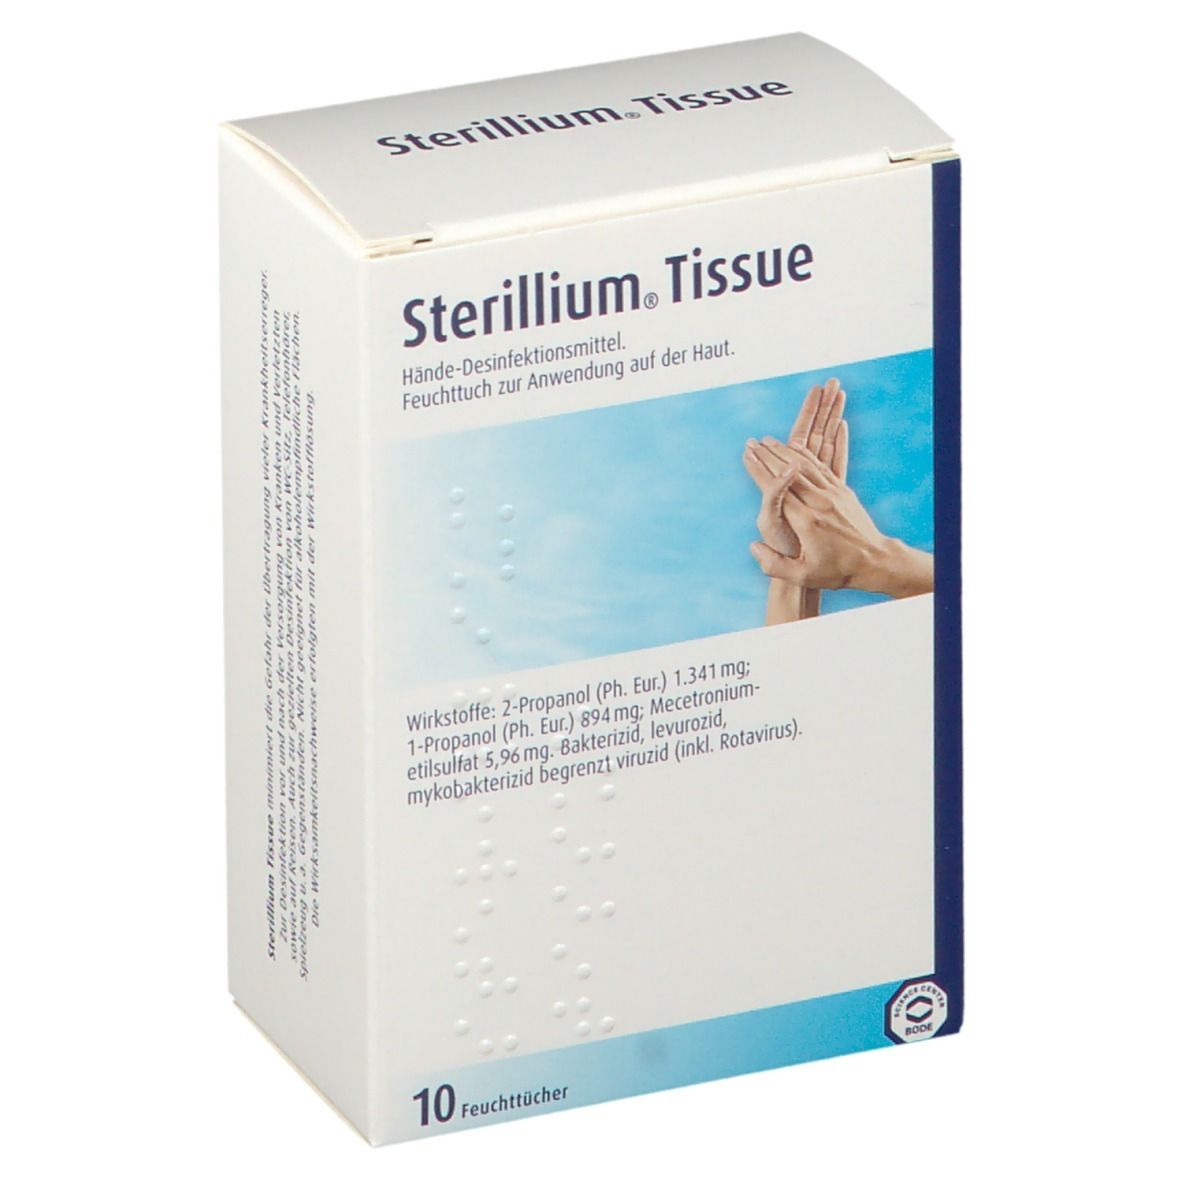 Sterillium® Tissue